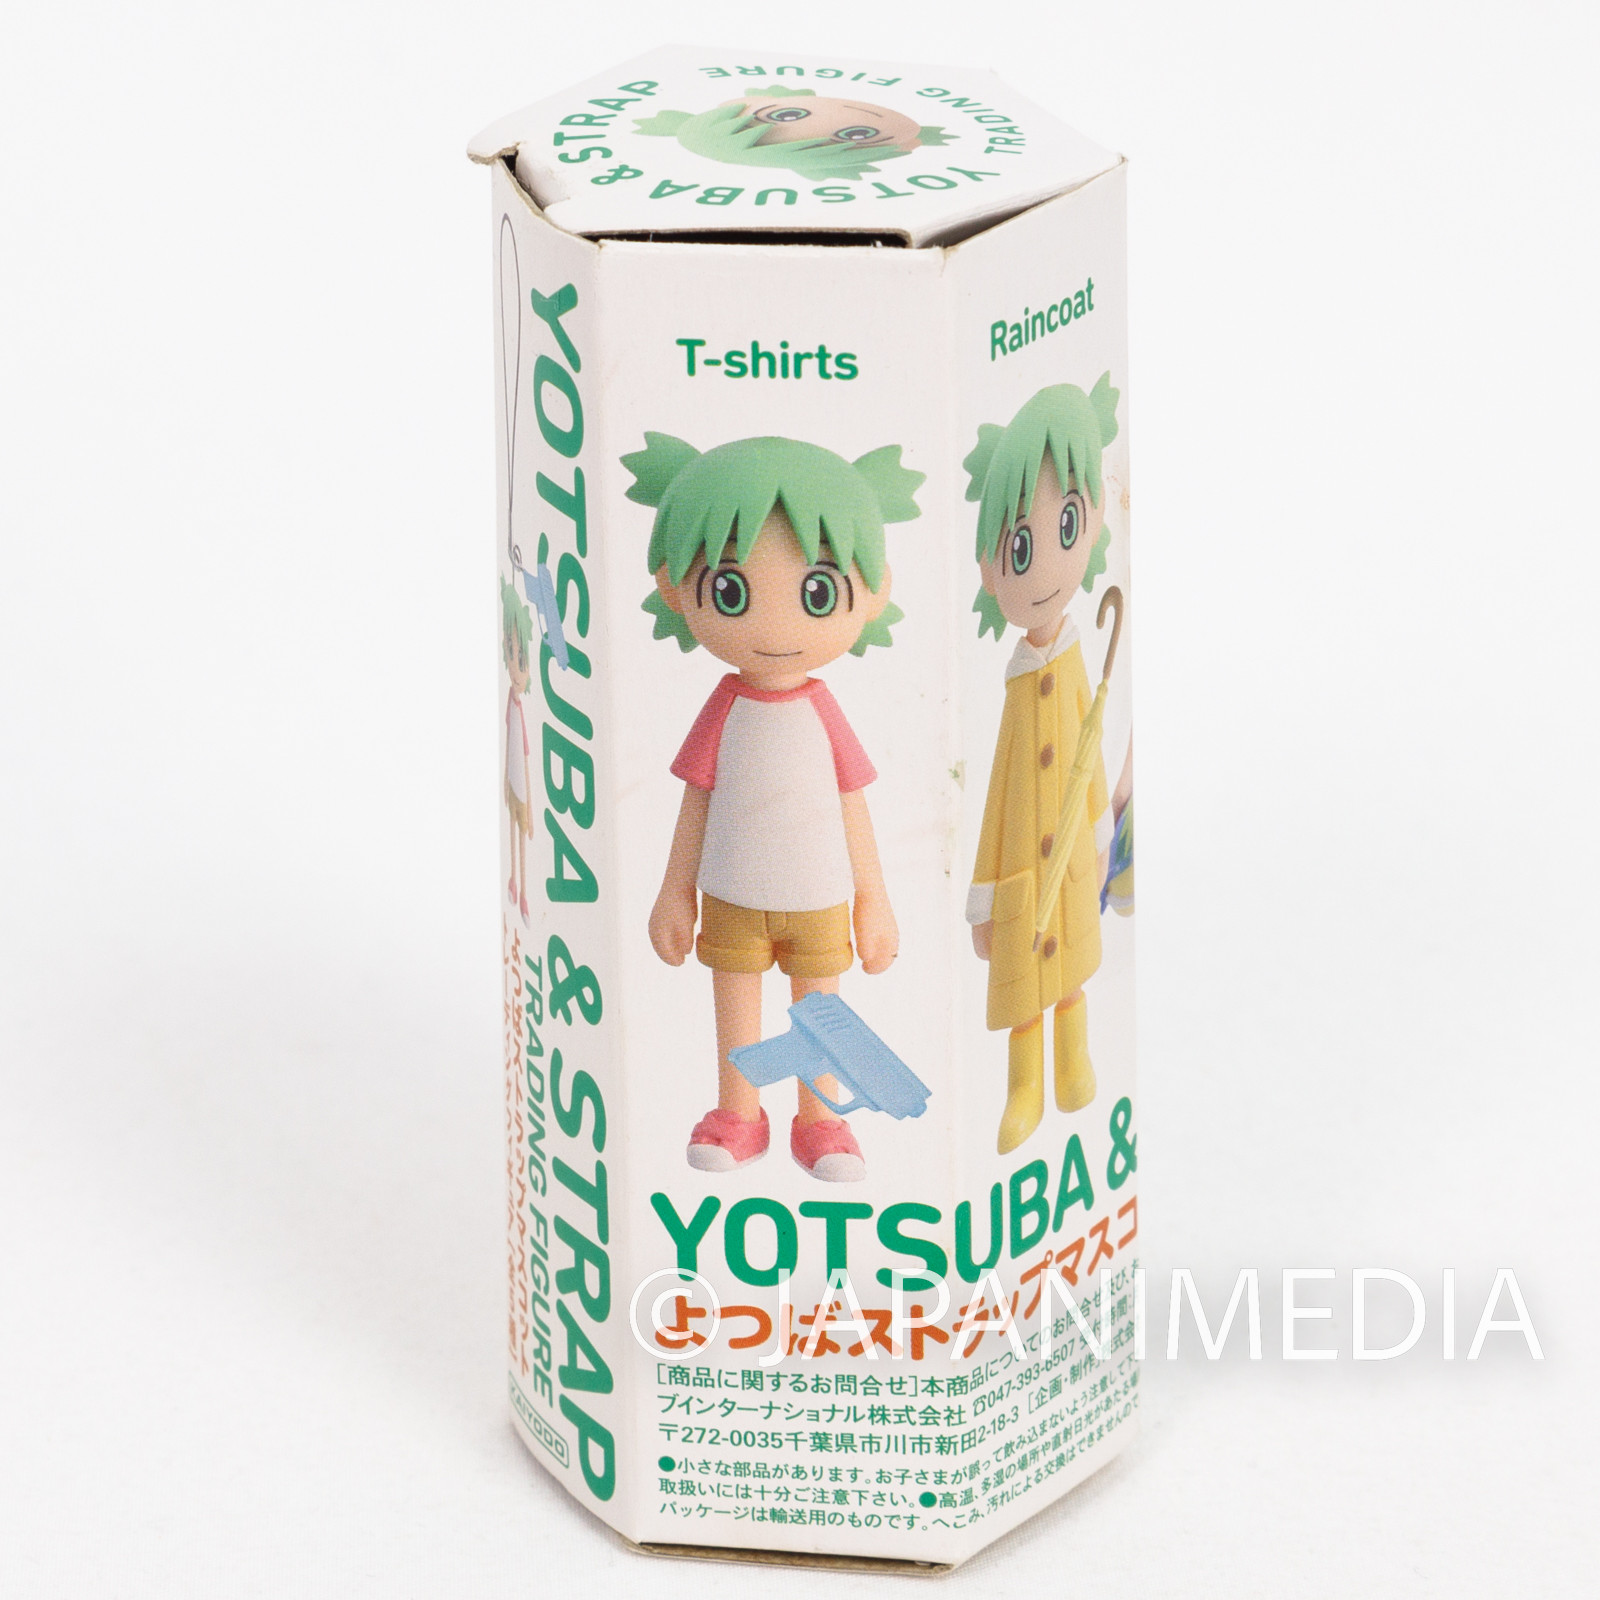 Yotsuba& Yotsuba Figure Strap Raincoat ver. JAPAN